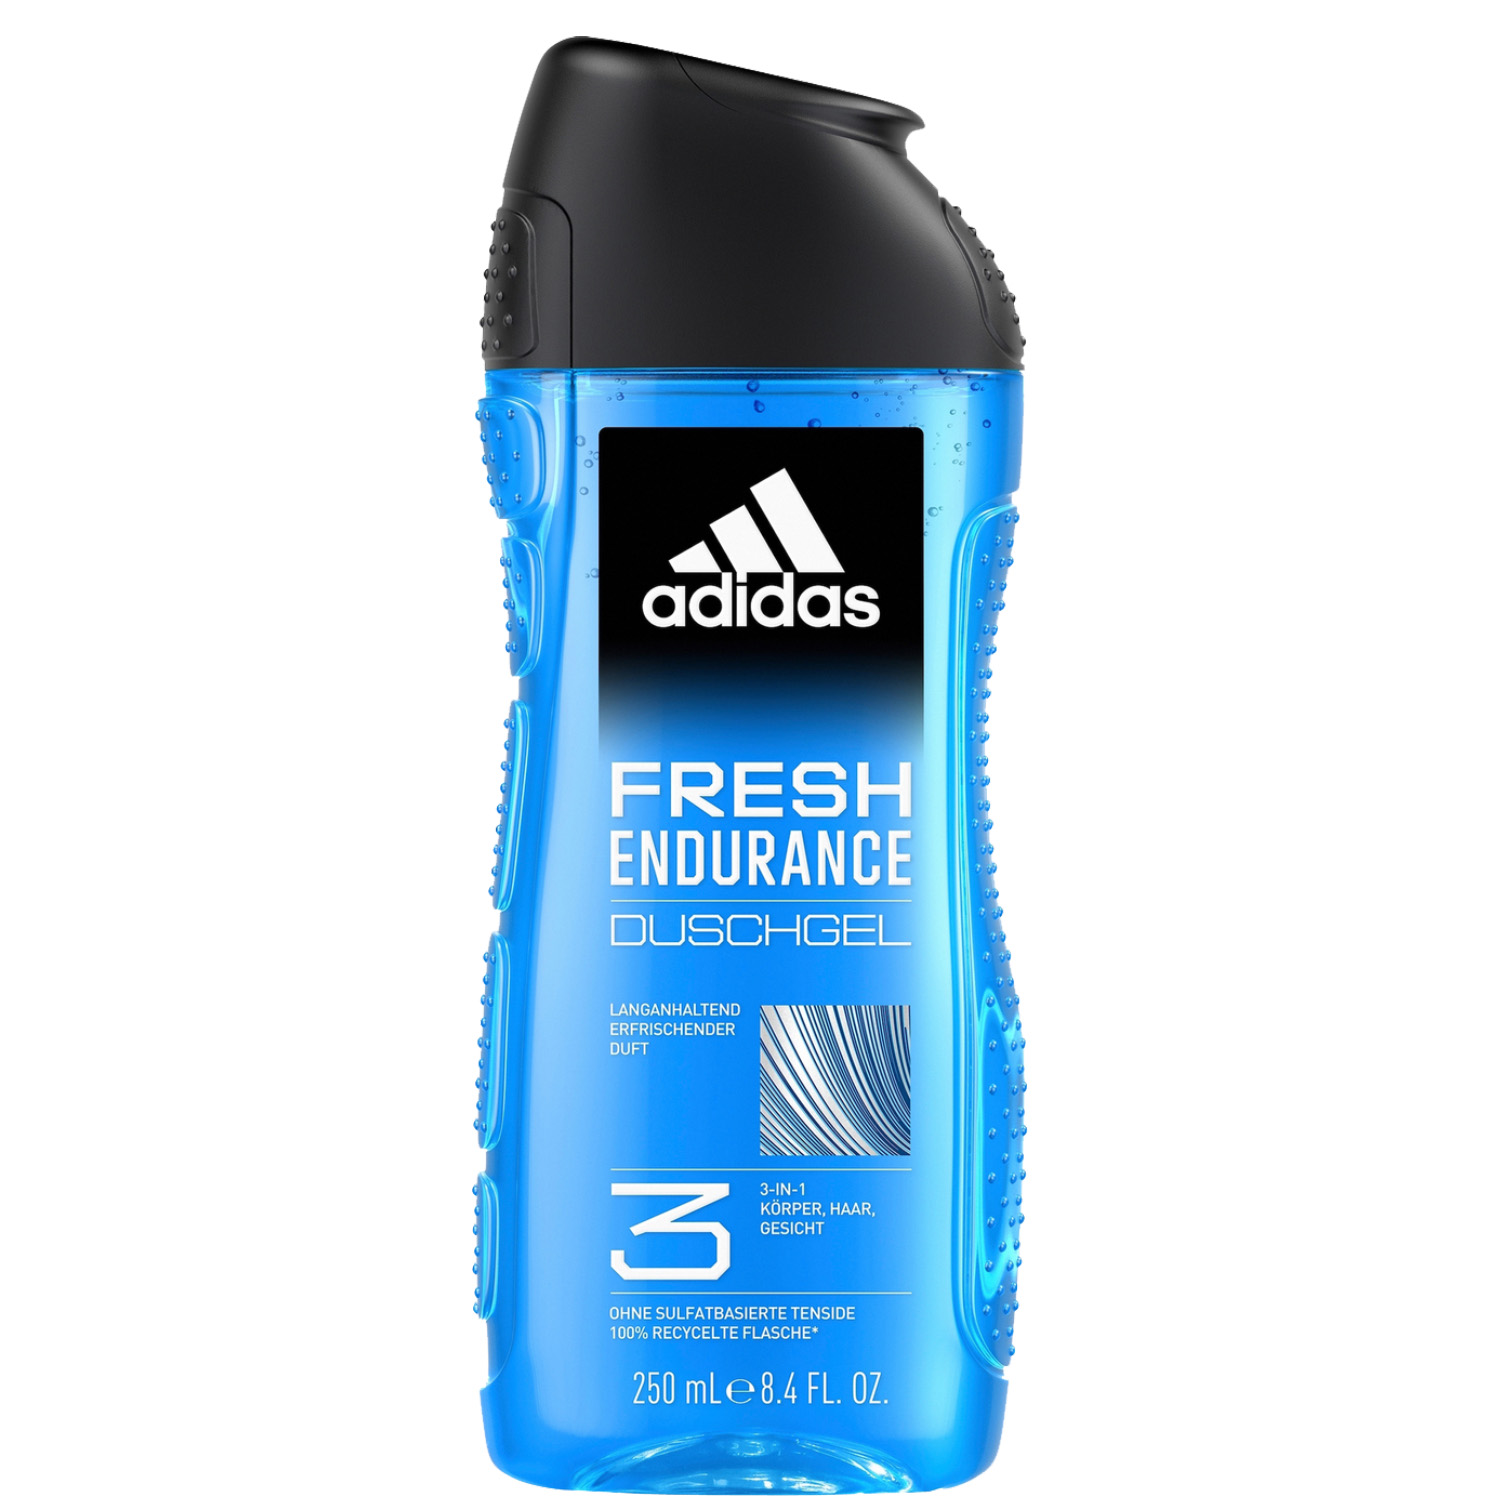 Adidas Fresh Endurance 3in1 Shower Gel 250ml